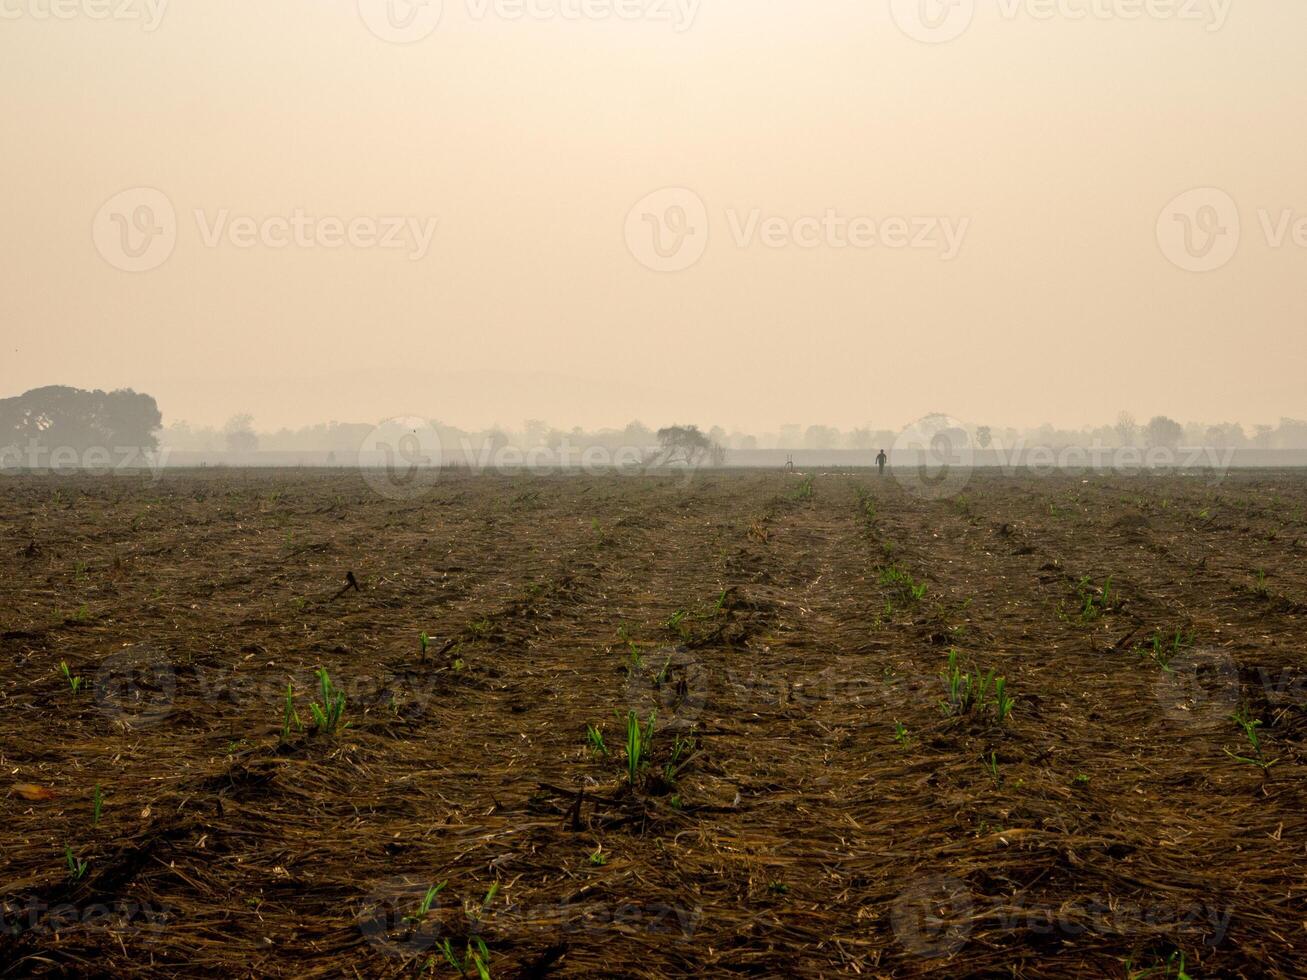 sockerrör plantager, jordbruks växter växa upp foto